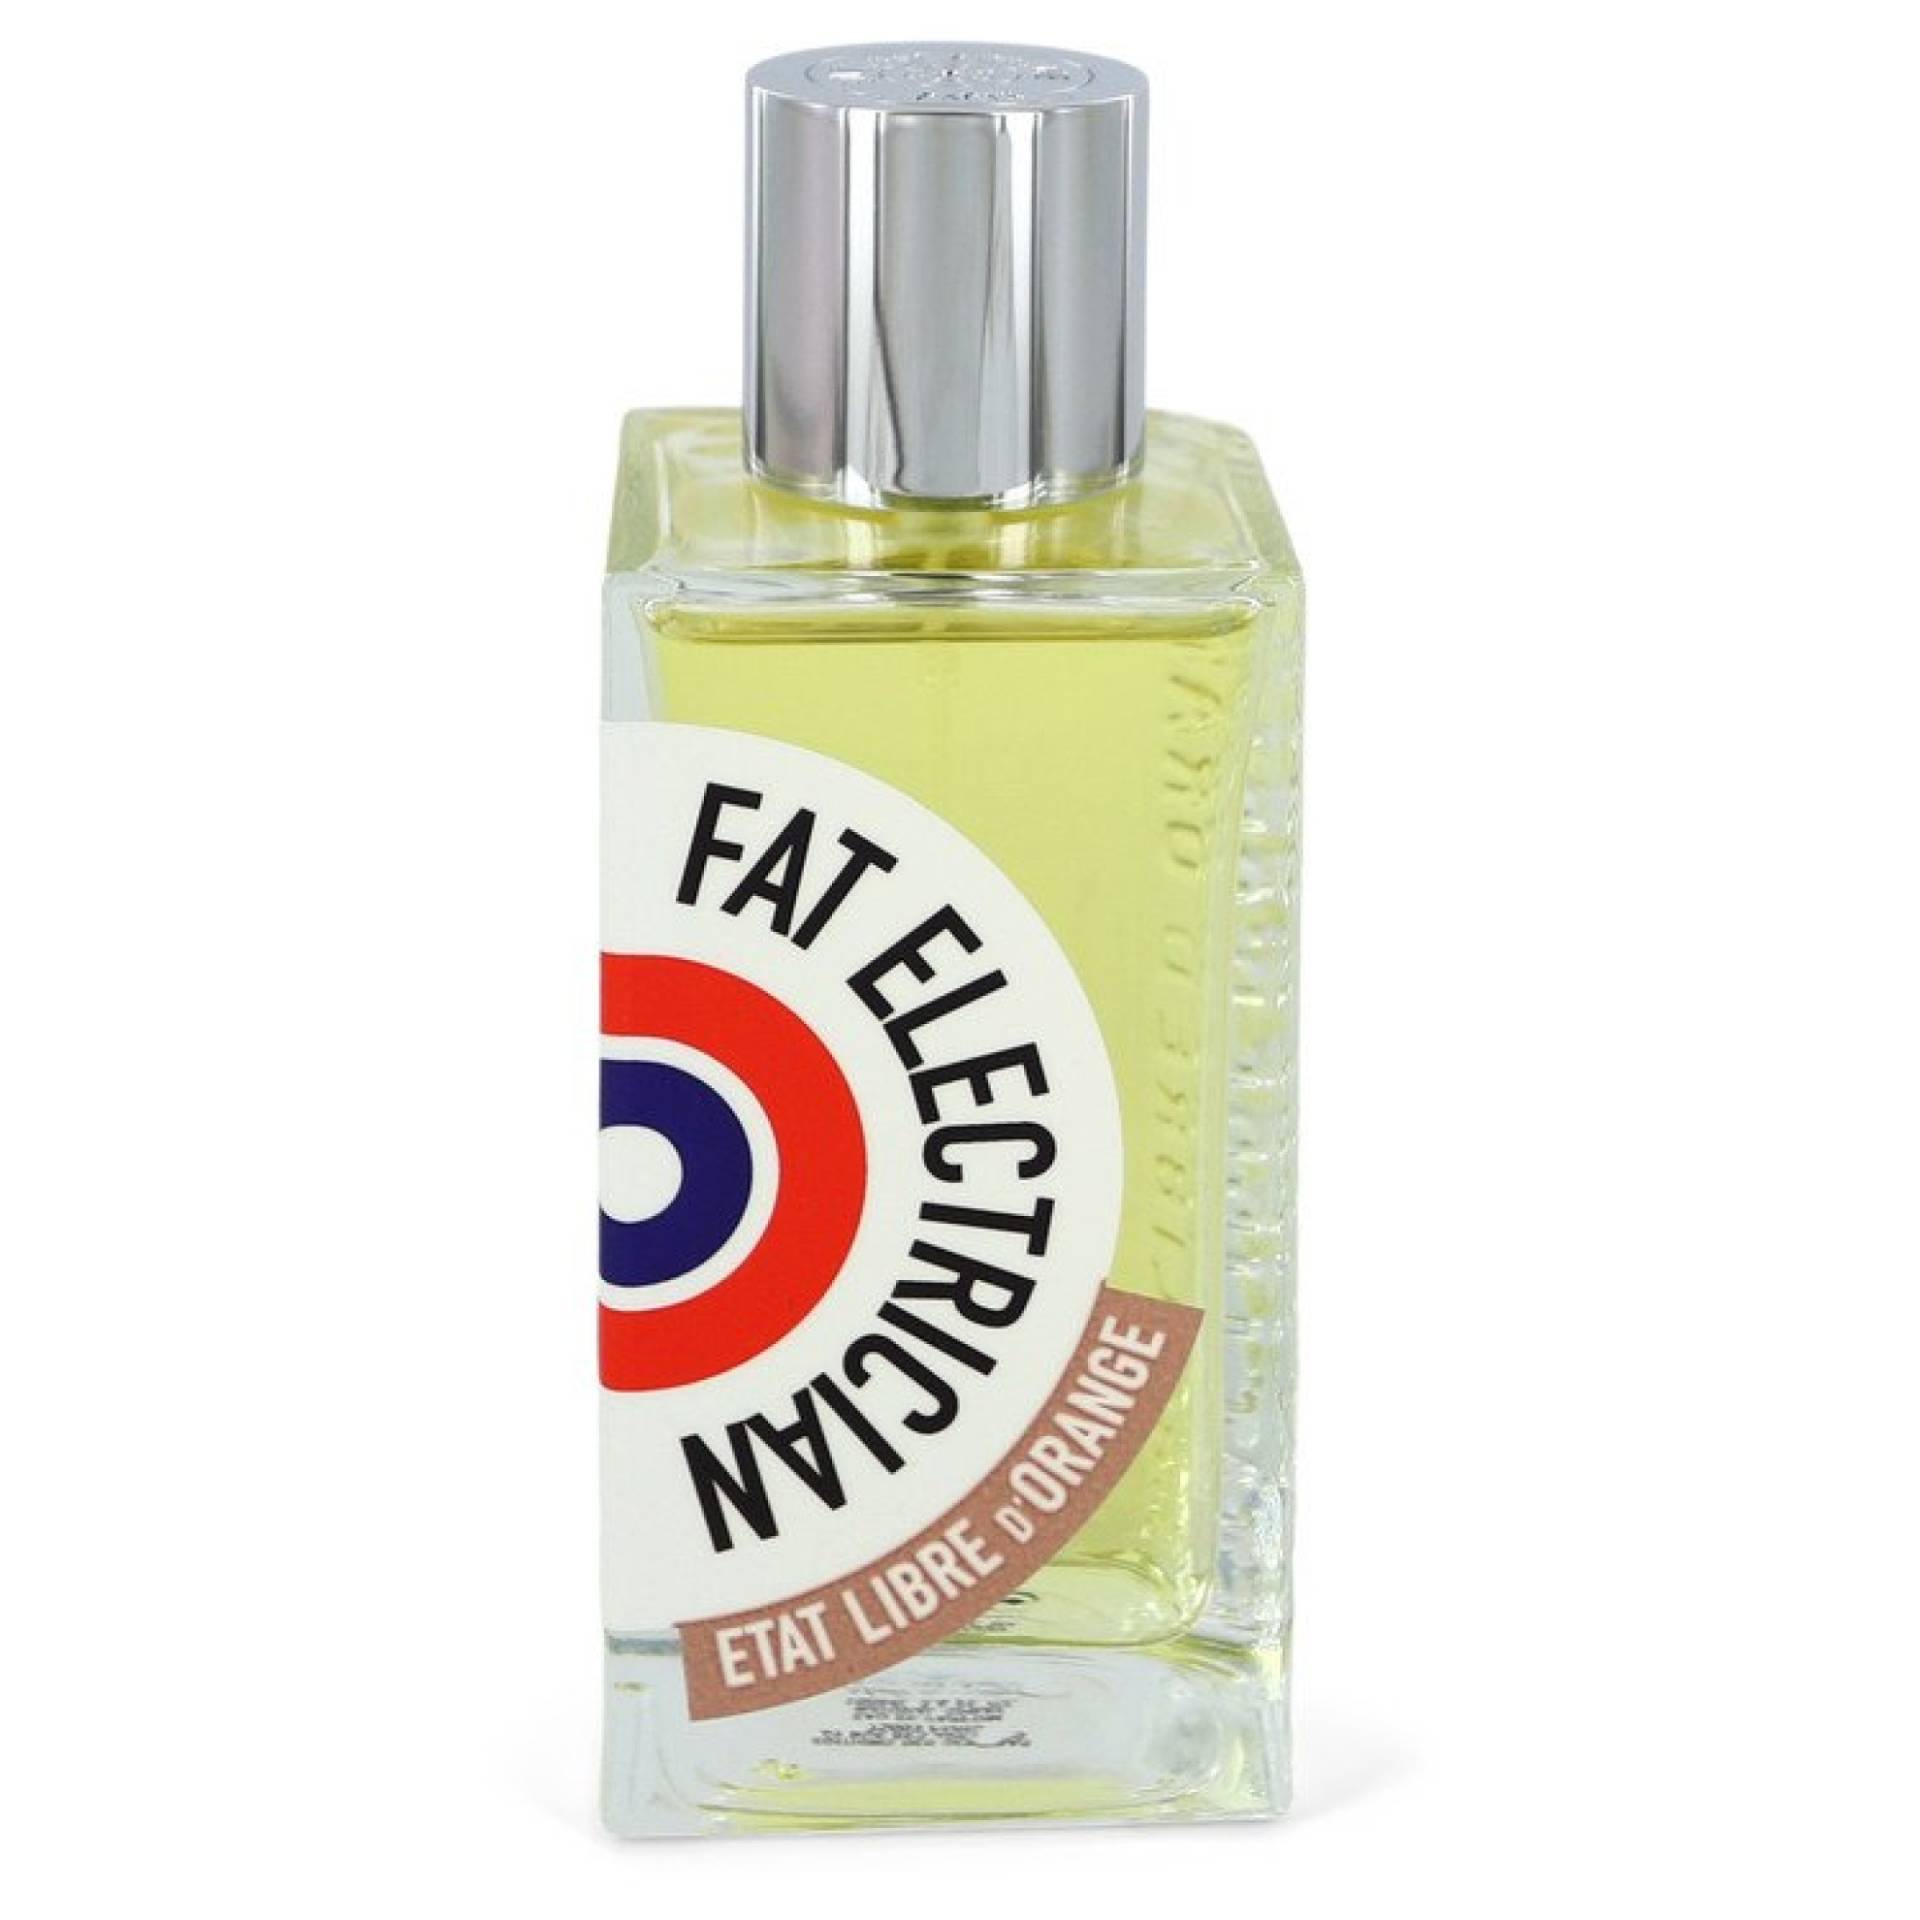 Etat Libre D'orange Fat Electrician Eau De Parfum Spray (Tester) 100 ml von Etat Libre D'orange